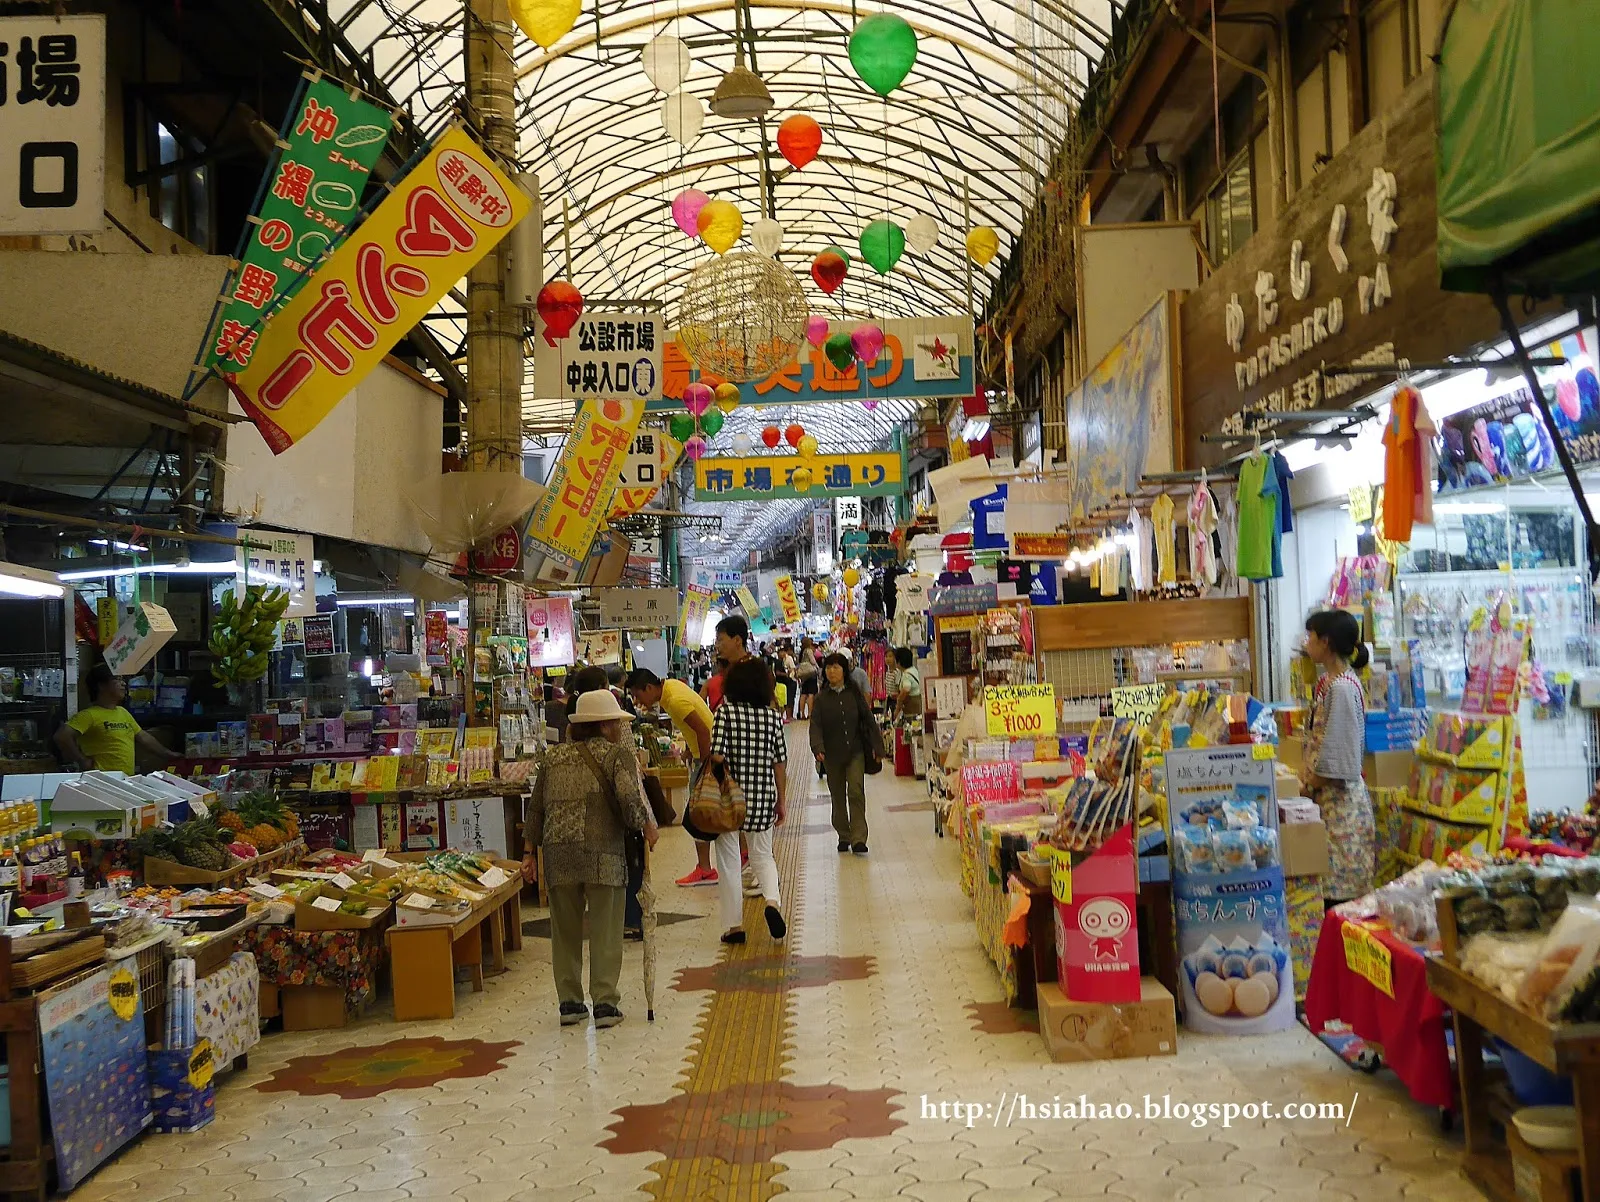 沖繩-國際通-牧志公設市場-平和通-浮島通逛街-國際通購物-國際通逛街-國際通景點-自由行-Okinawa-kokusaidori